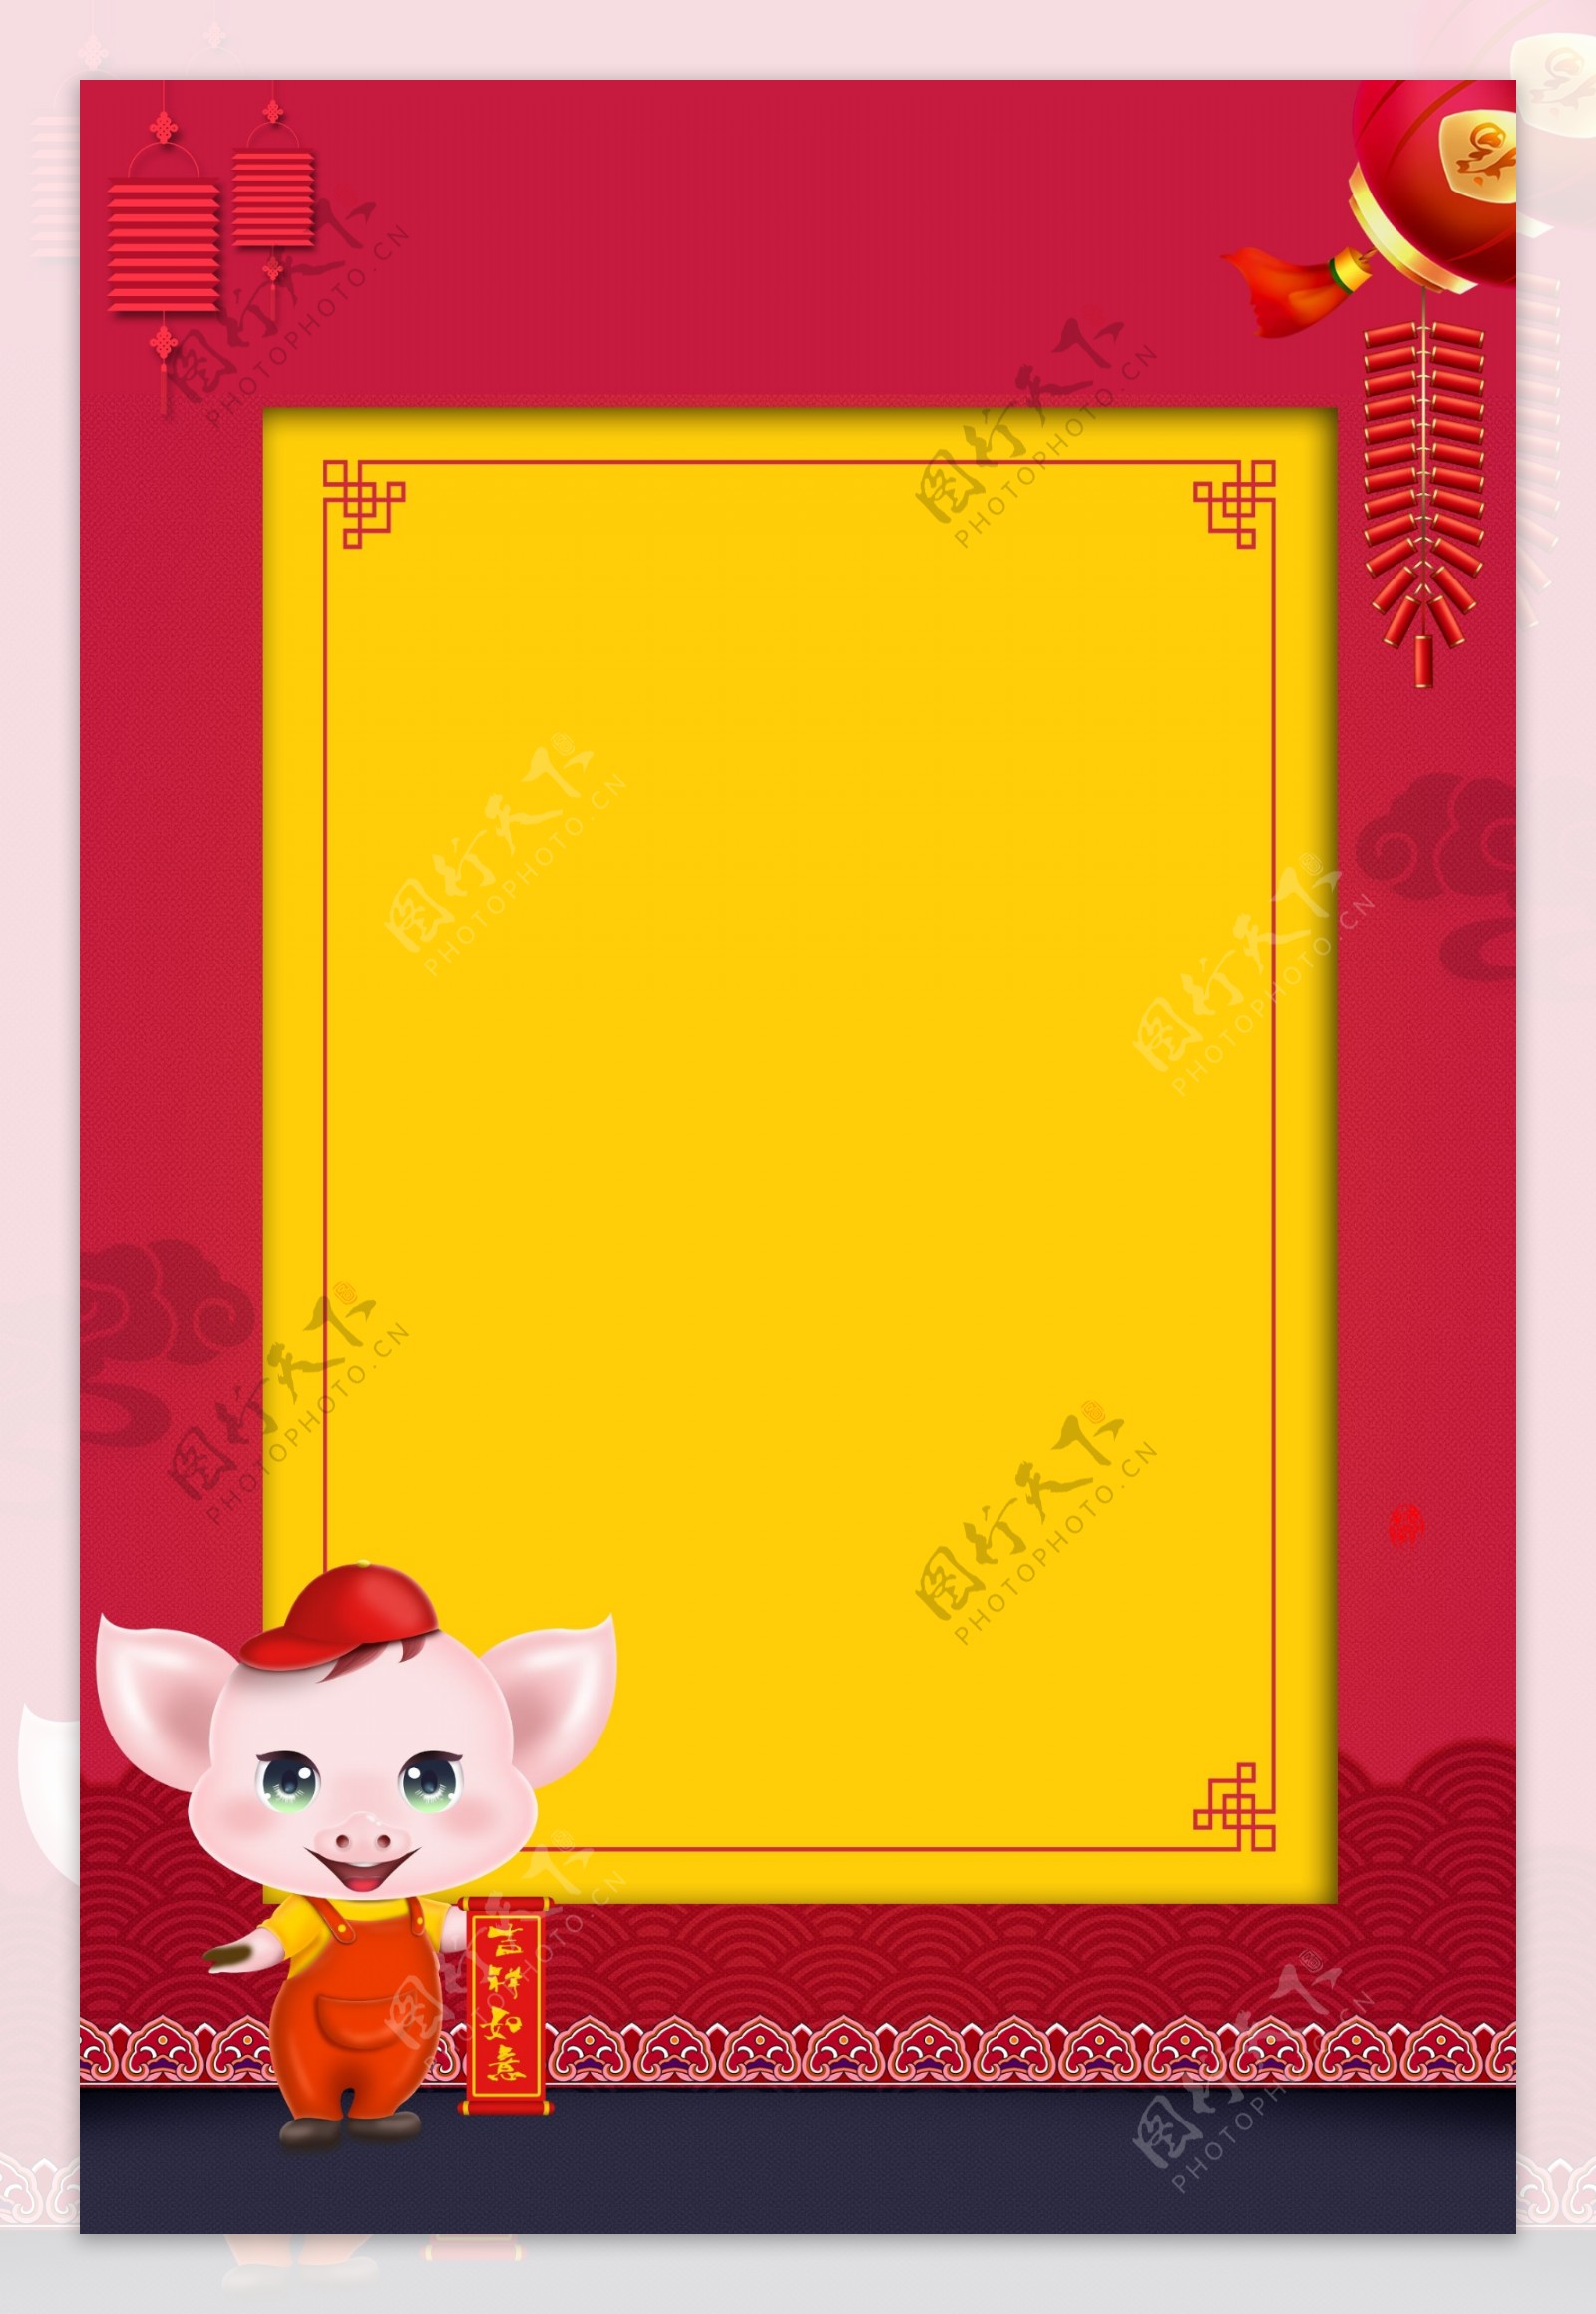 红黄猪年贺卡背景素材